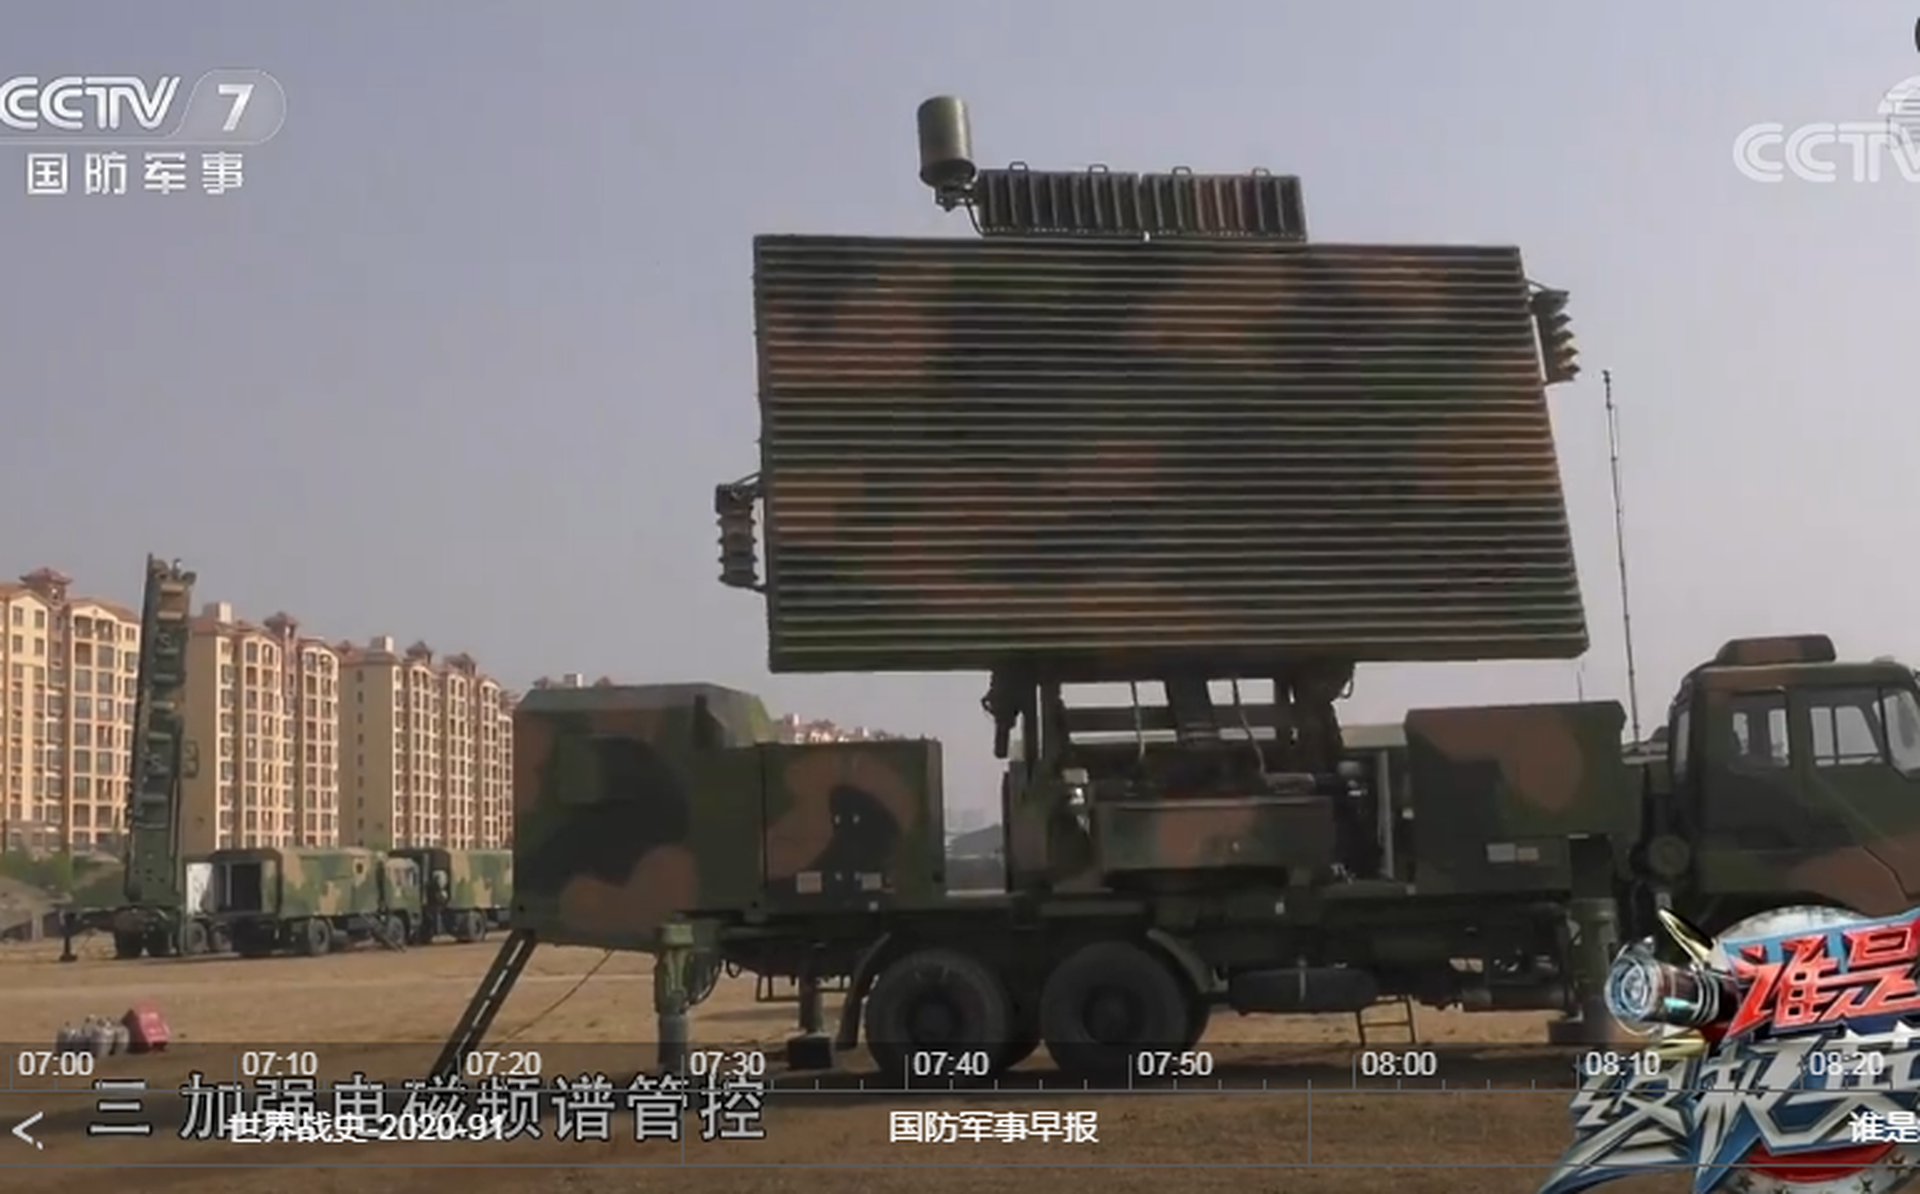 红旗22的目标指示雷达起竖展开状态。 ​（中国央视截图）